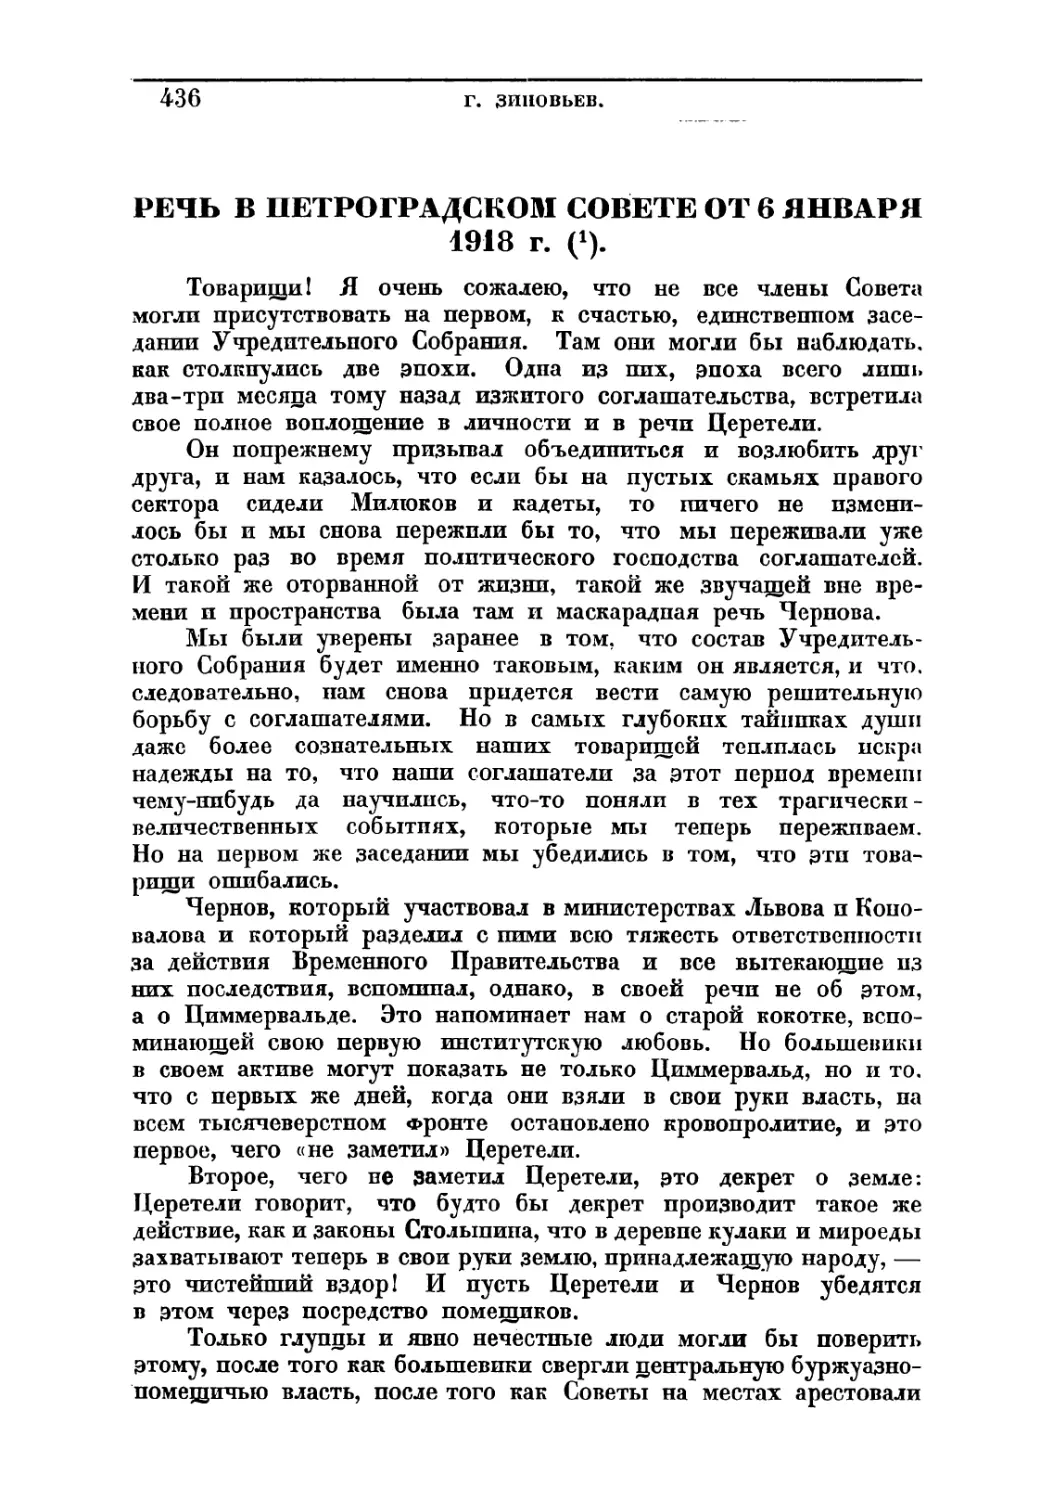 РЕЧЬ В ПЕТРОГРАДСКОМ СОВЕТЕ ОТ 6 ЯНВАРЯ 1918 г.